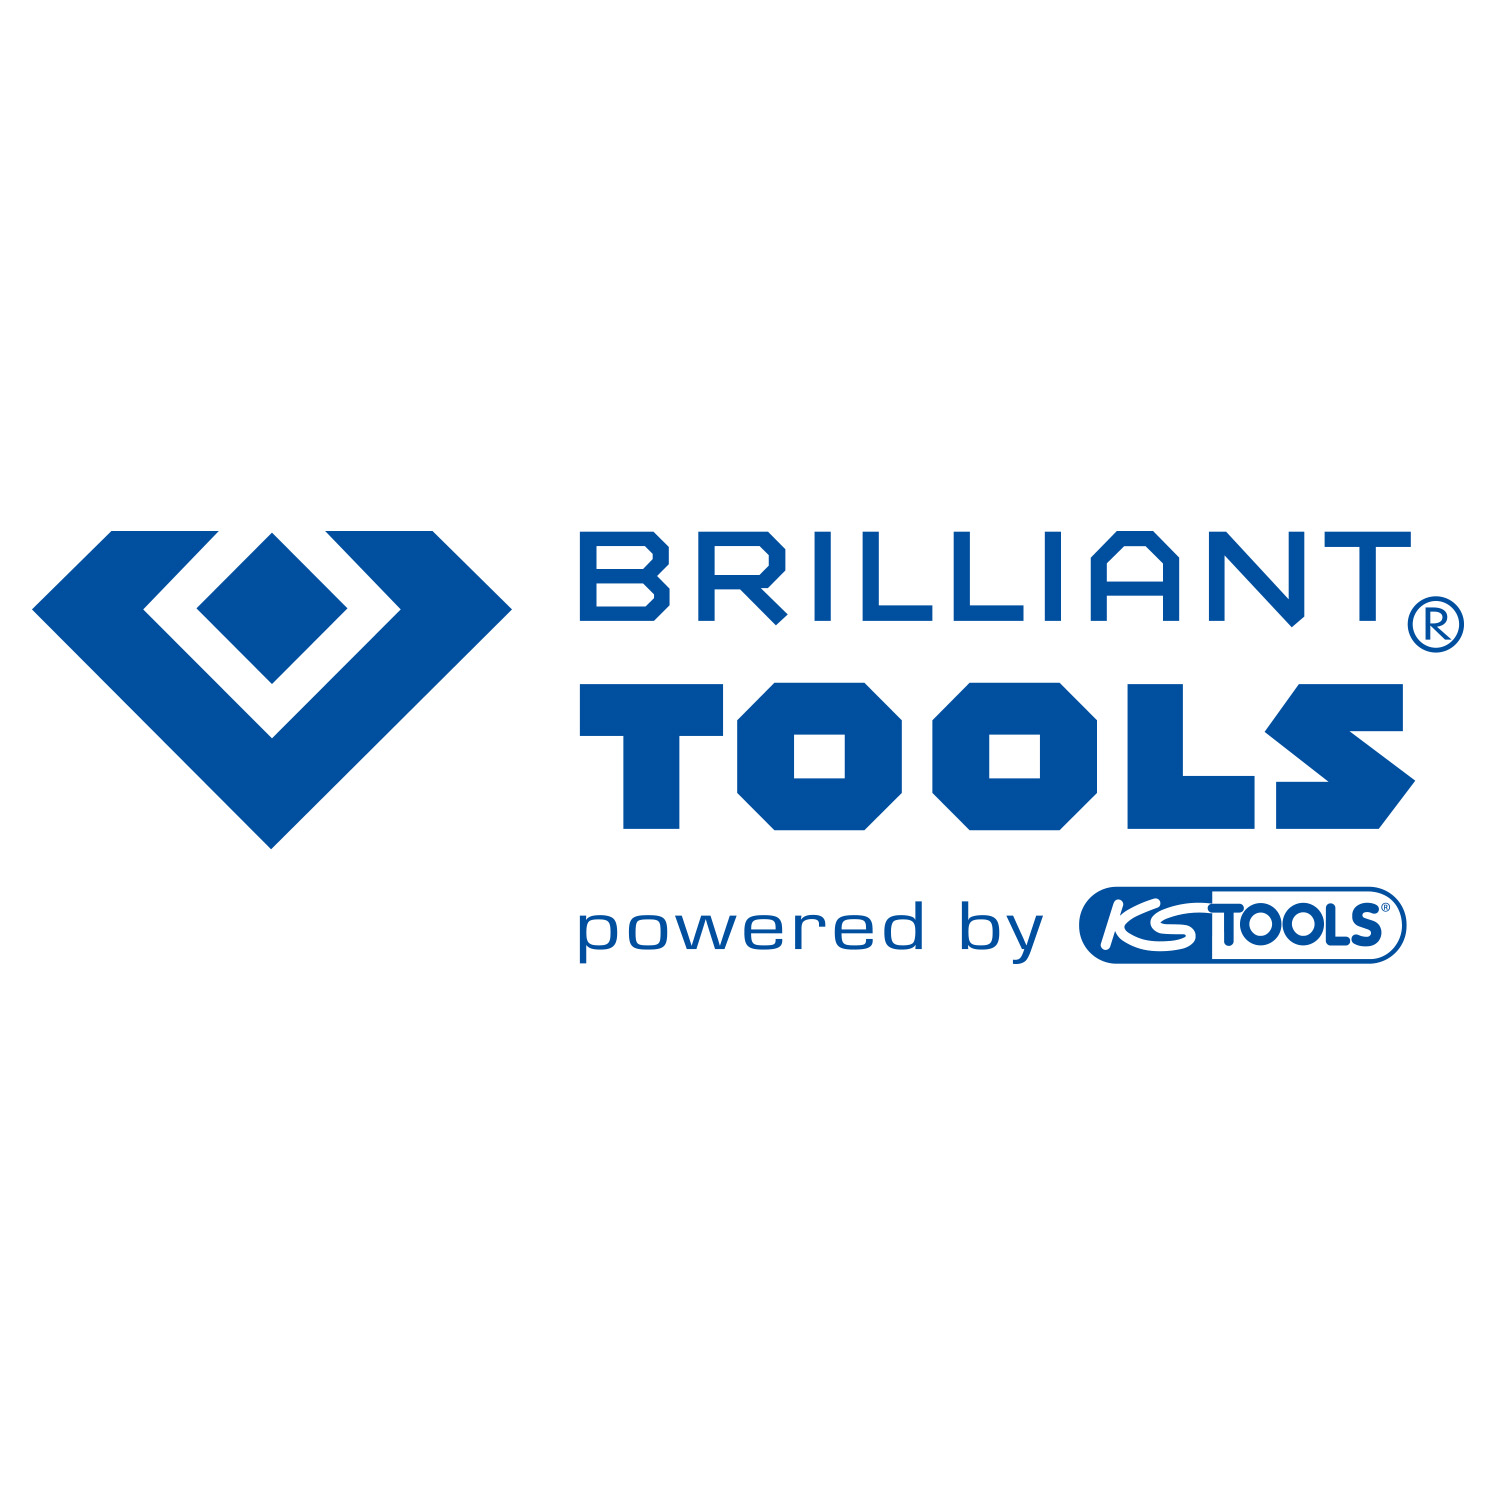 Brilliant Tools by KS Tools